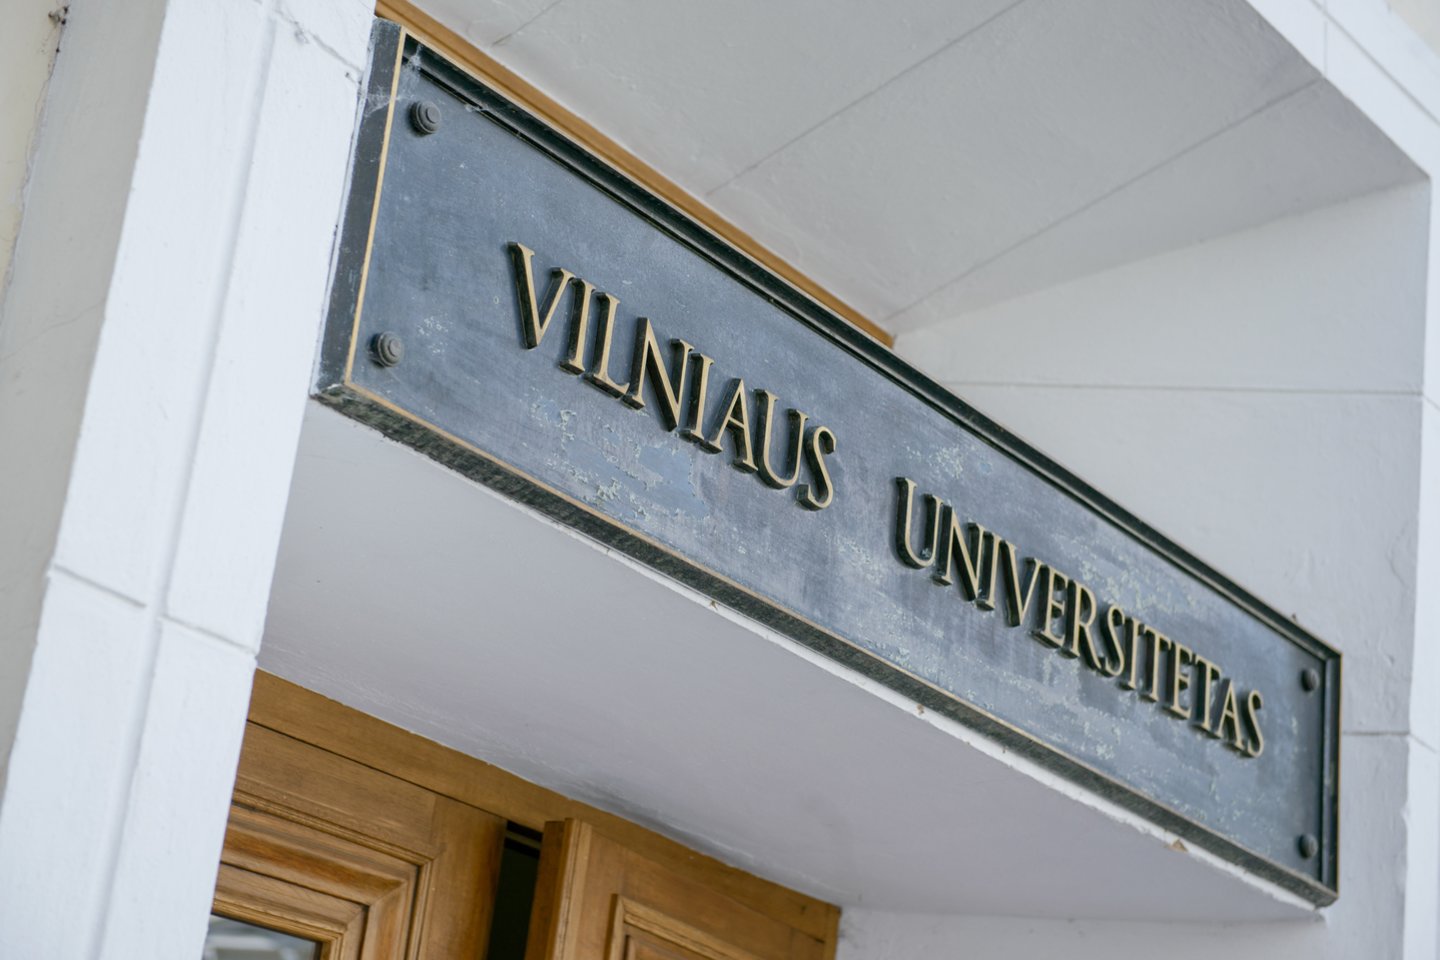 Vilniaus universitetas<br>J.Stacevičiaus nuotr.